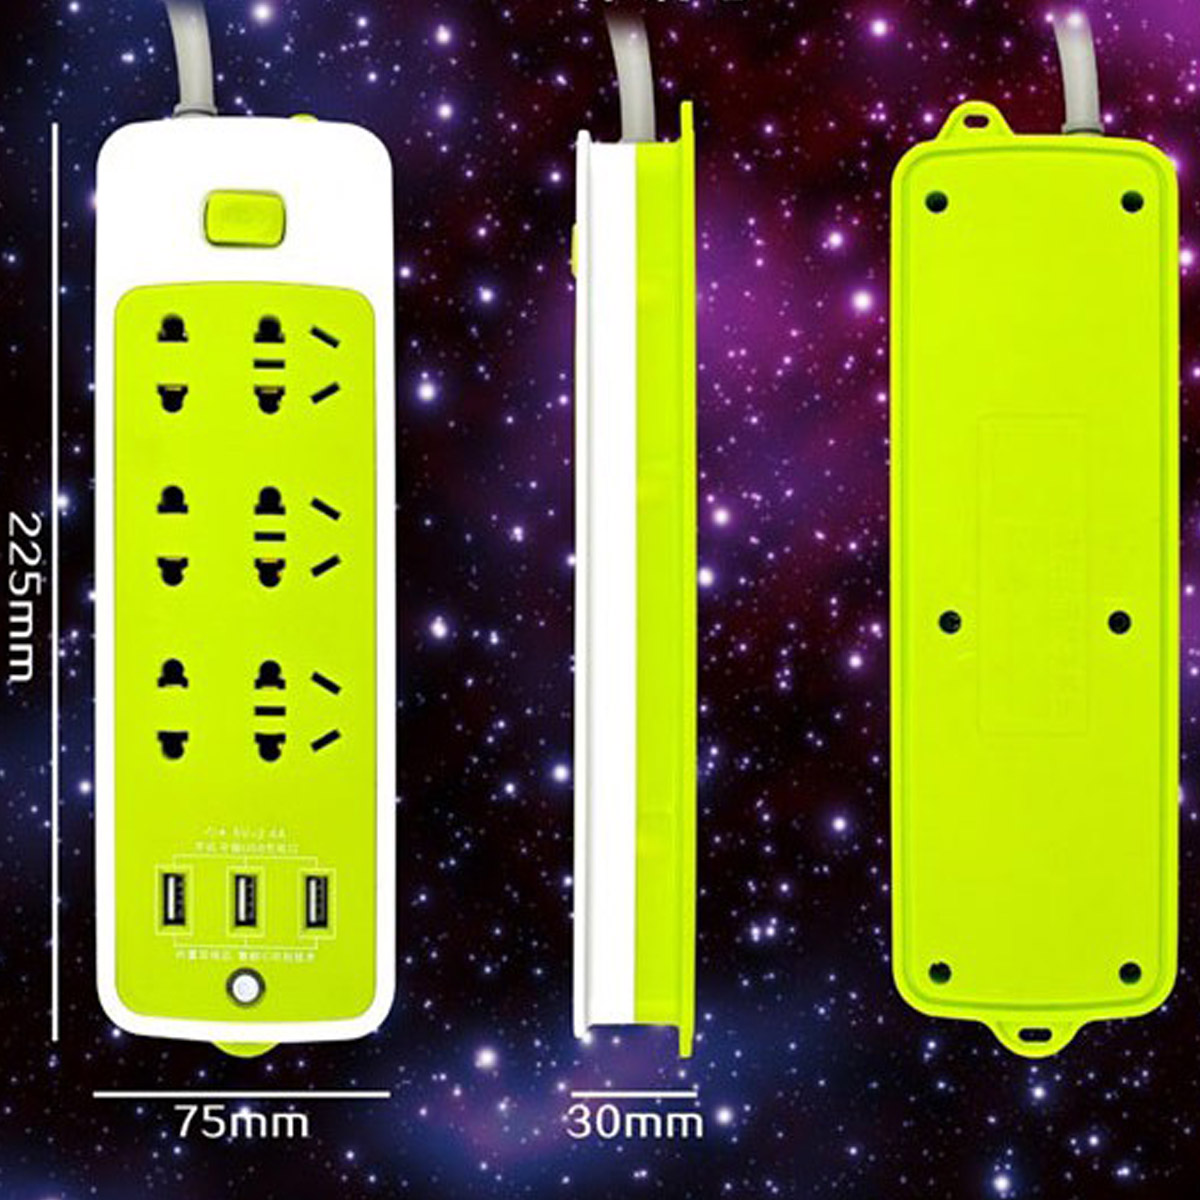 Ổ Cắm Điện Đa Năng Chống Giật Có 3 Cổng USB, Sạc Trực Tiếp, Tiết Kiệm Điện – Bộ Ổ Cắm Điện Xanh Lá Cao Cấp Chính Hãng - (Model ngẫu nhiên)